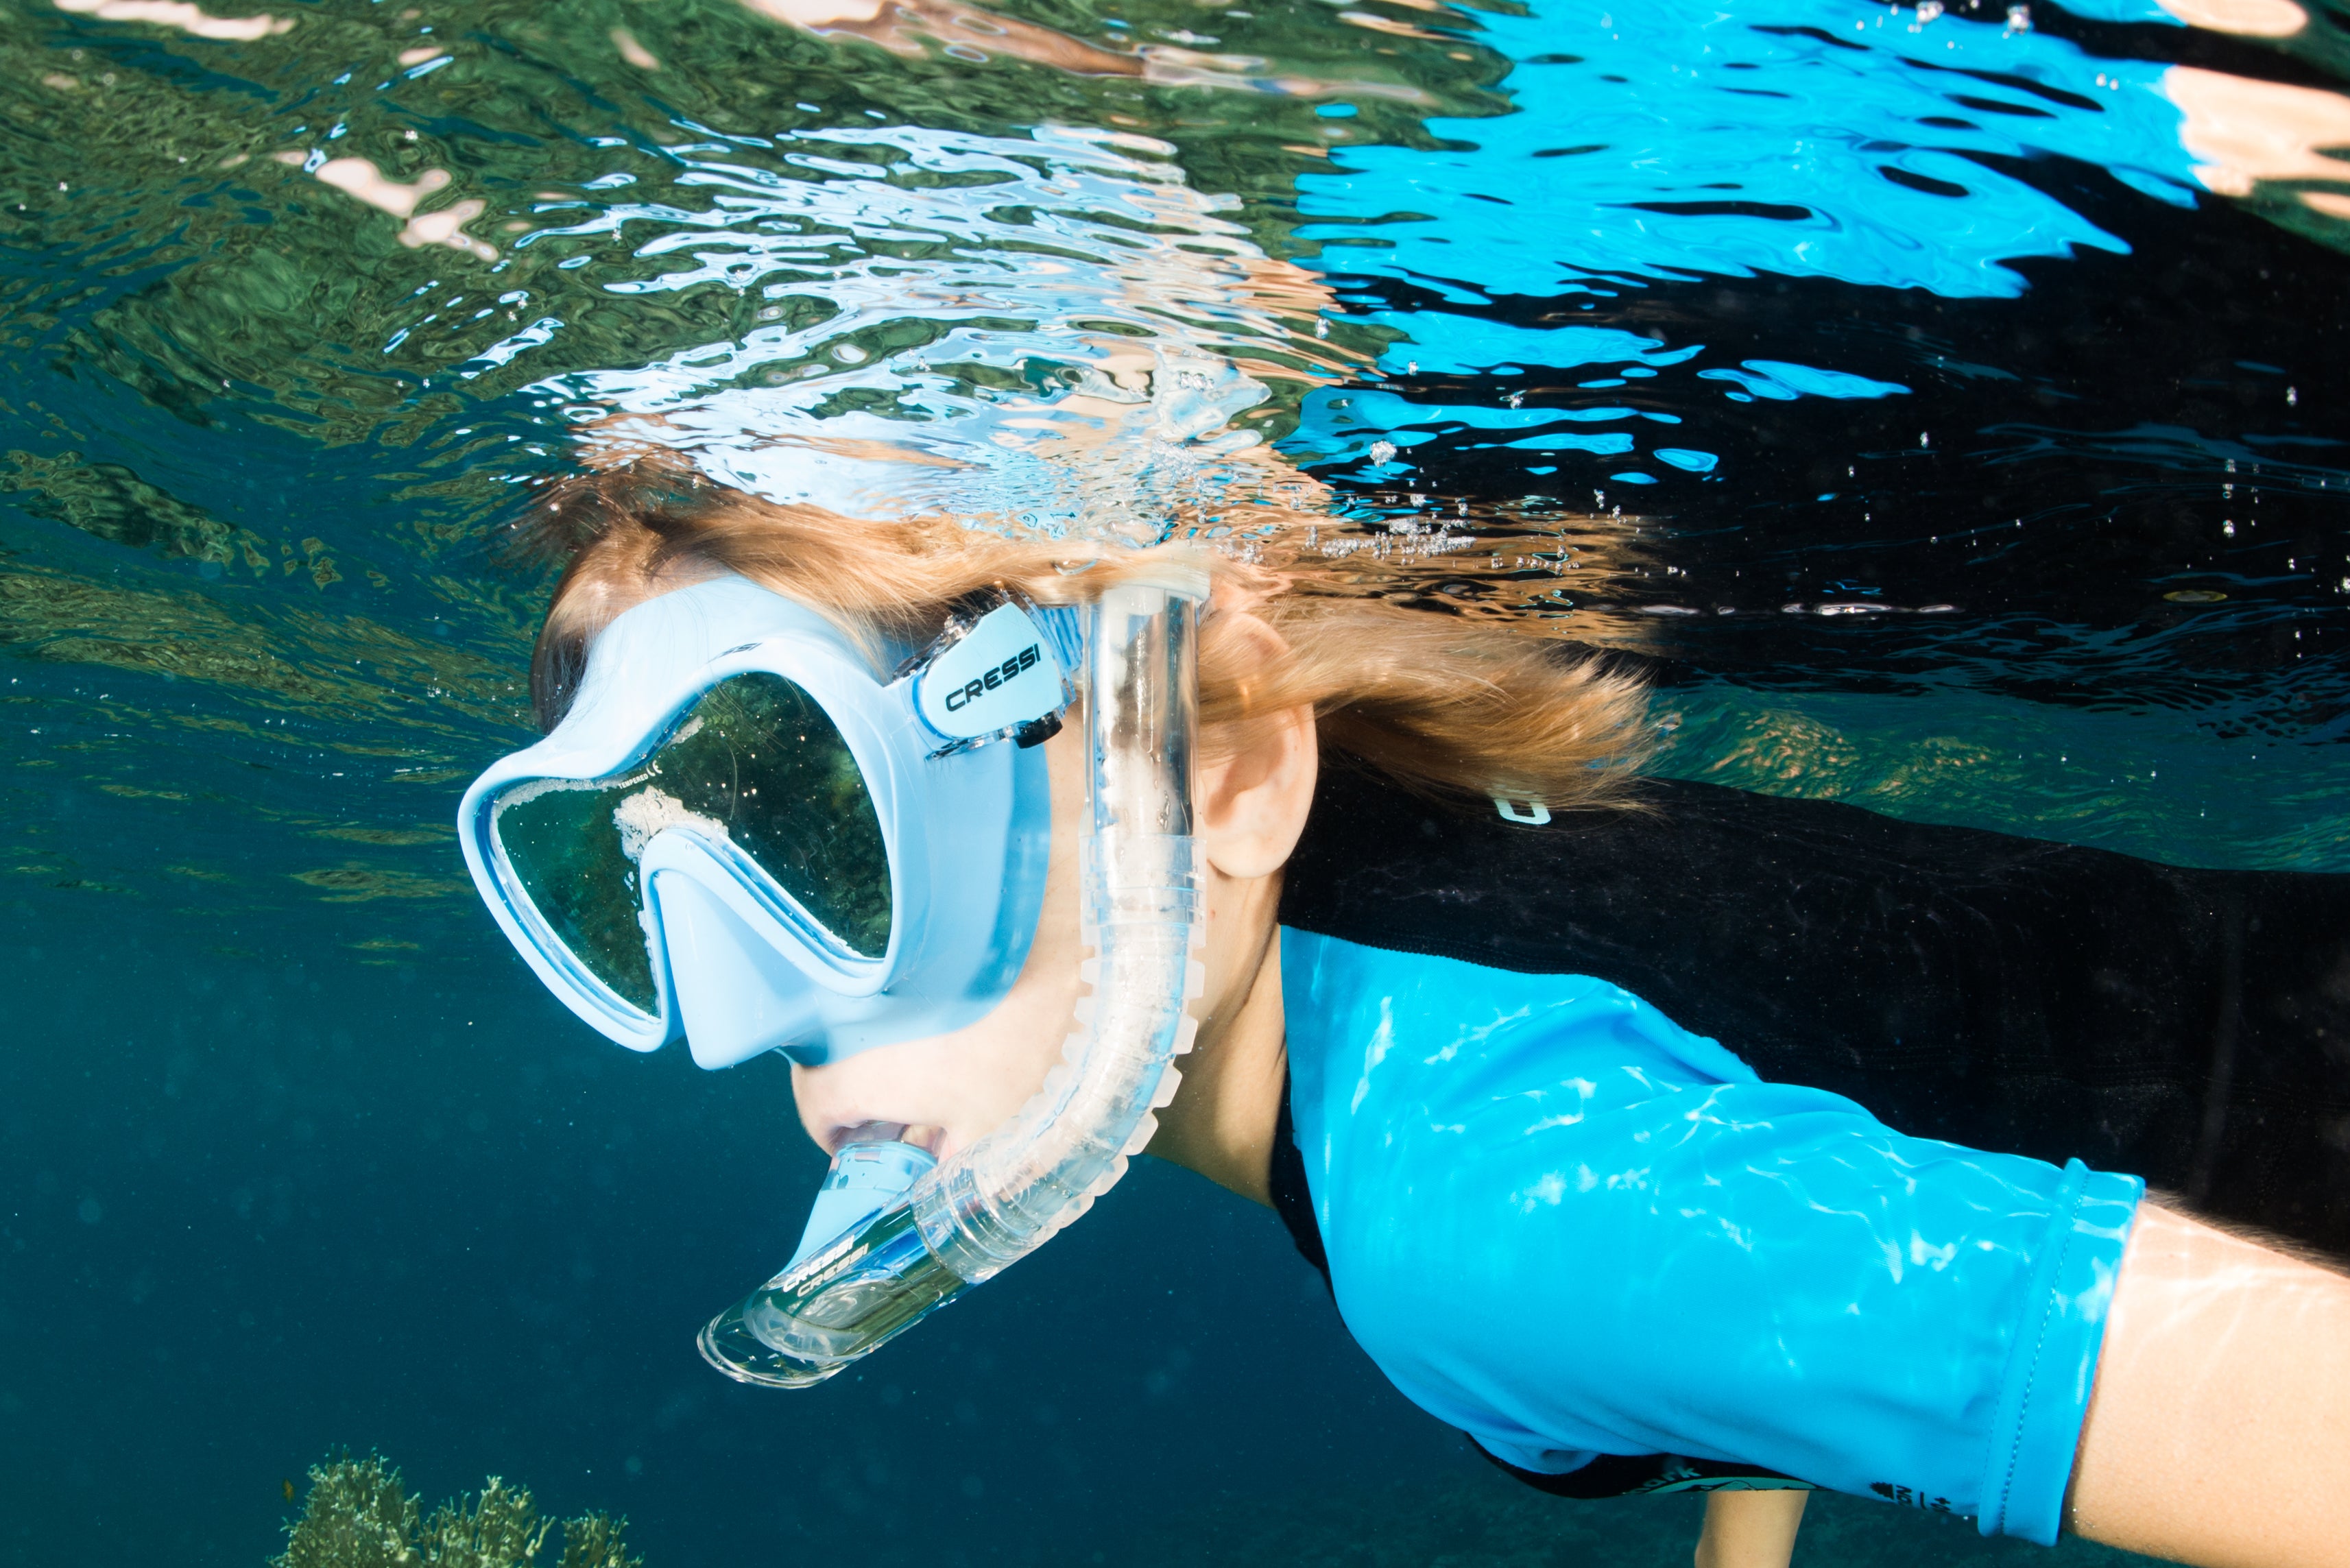 Masque de snorkeling Cressi Baron